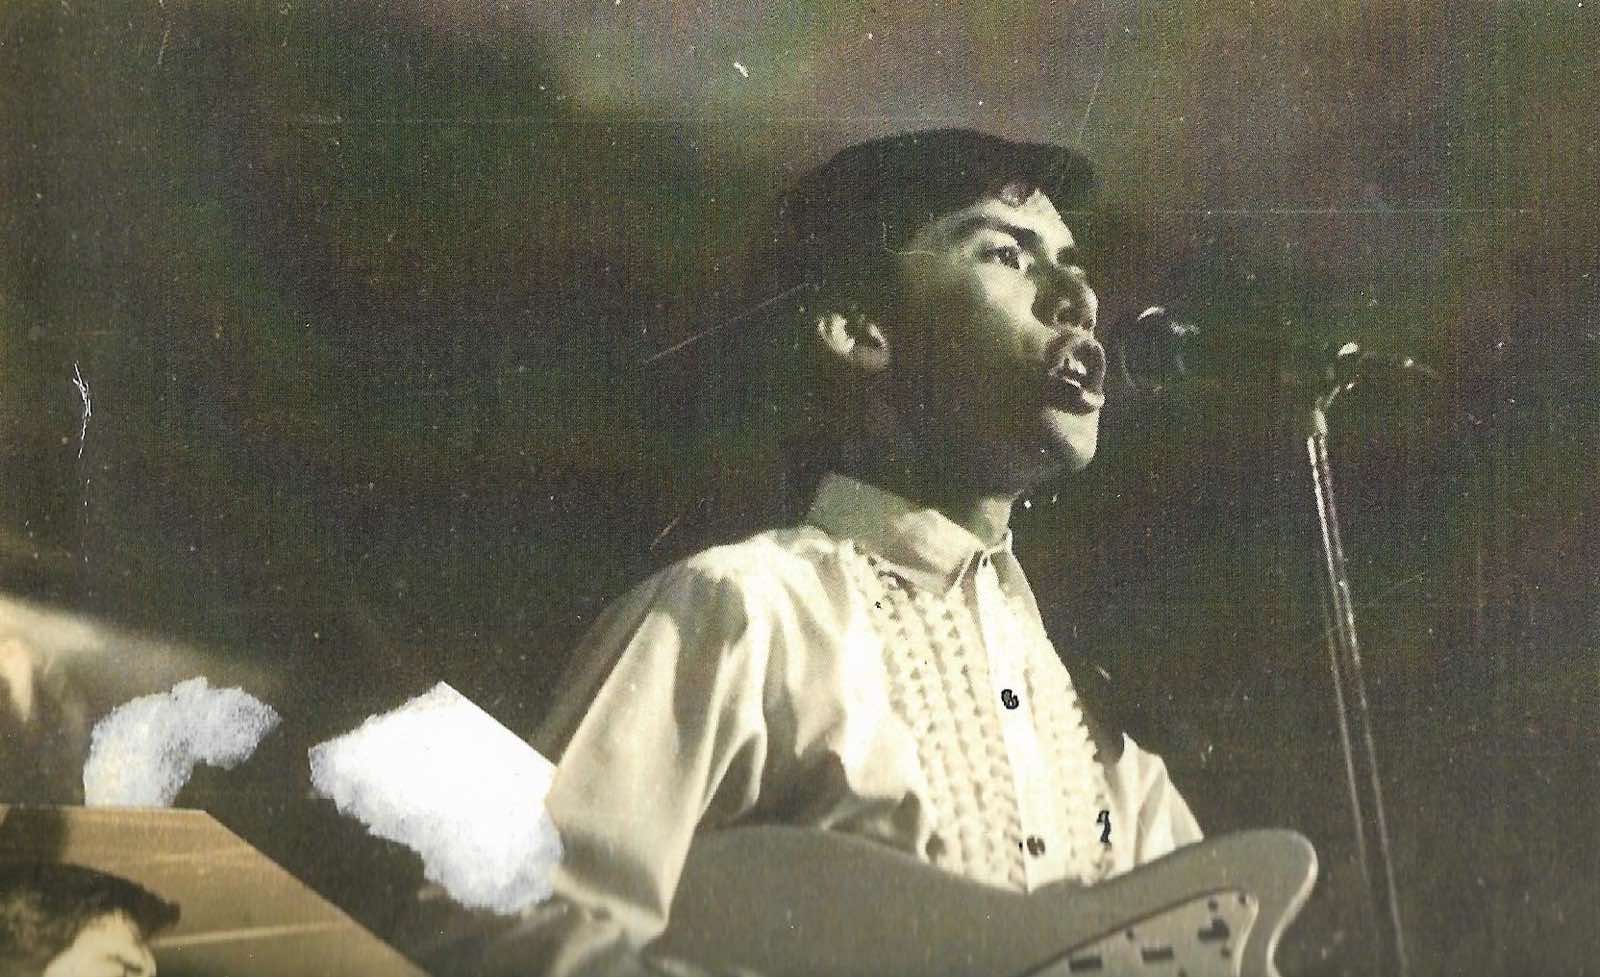 Tito Sen as a Musician 